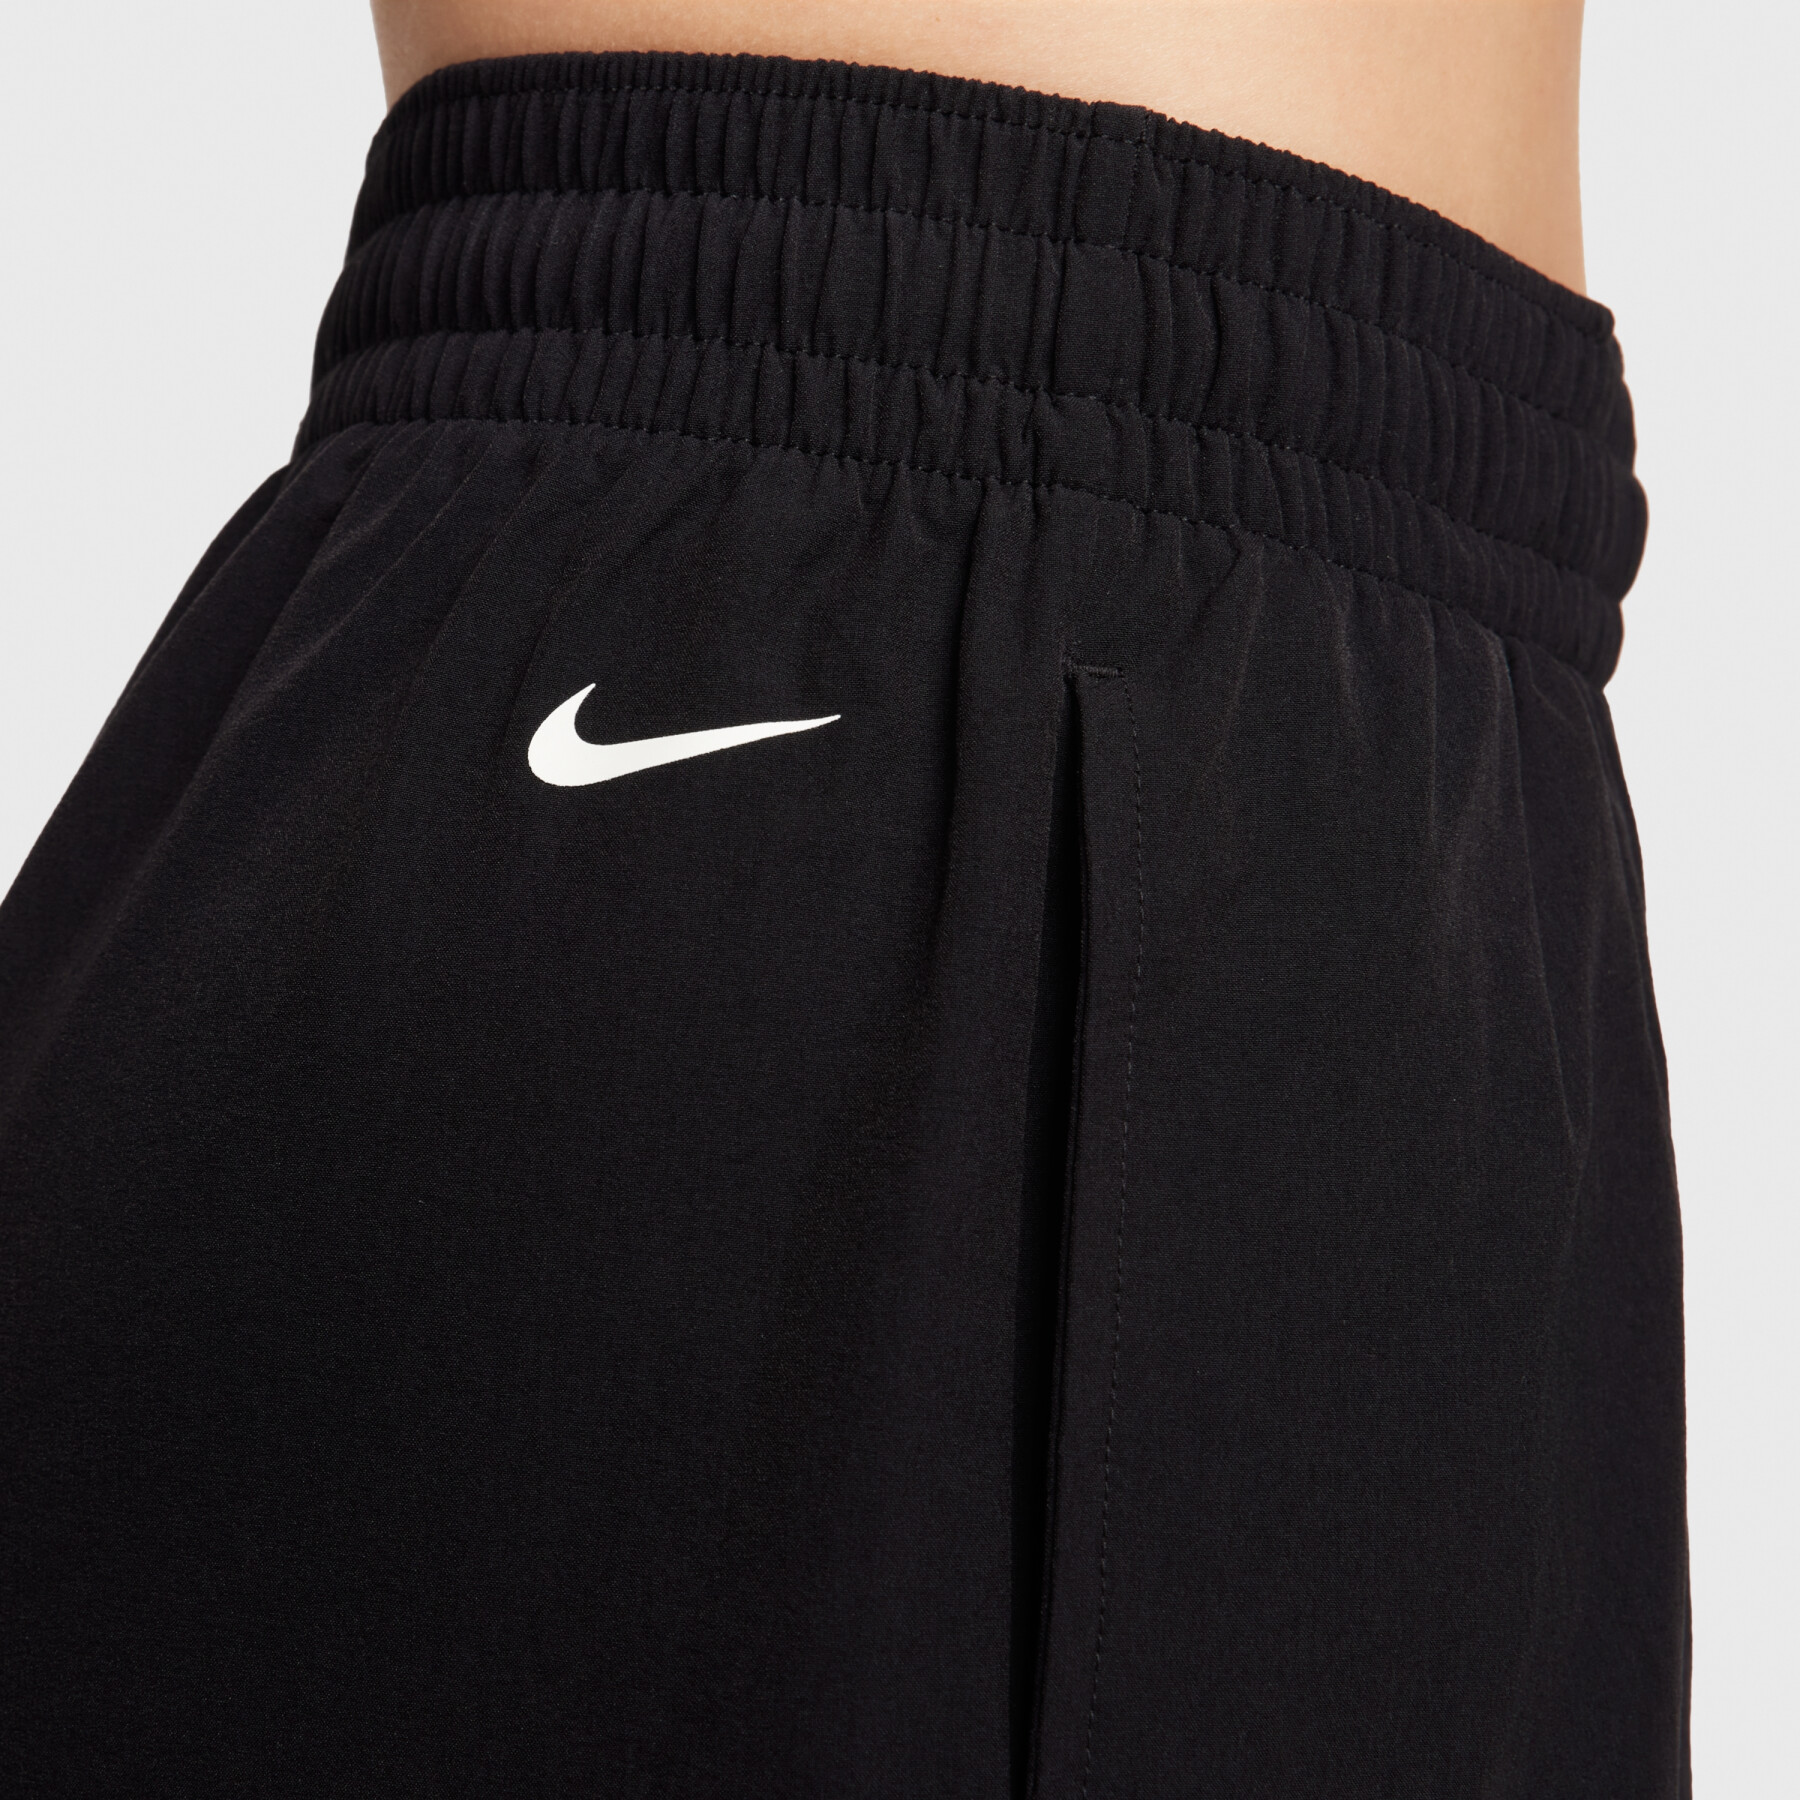 Cargo broek voor dames Nike Woven